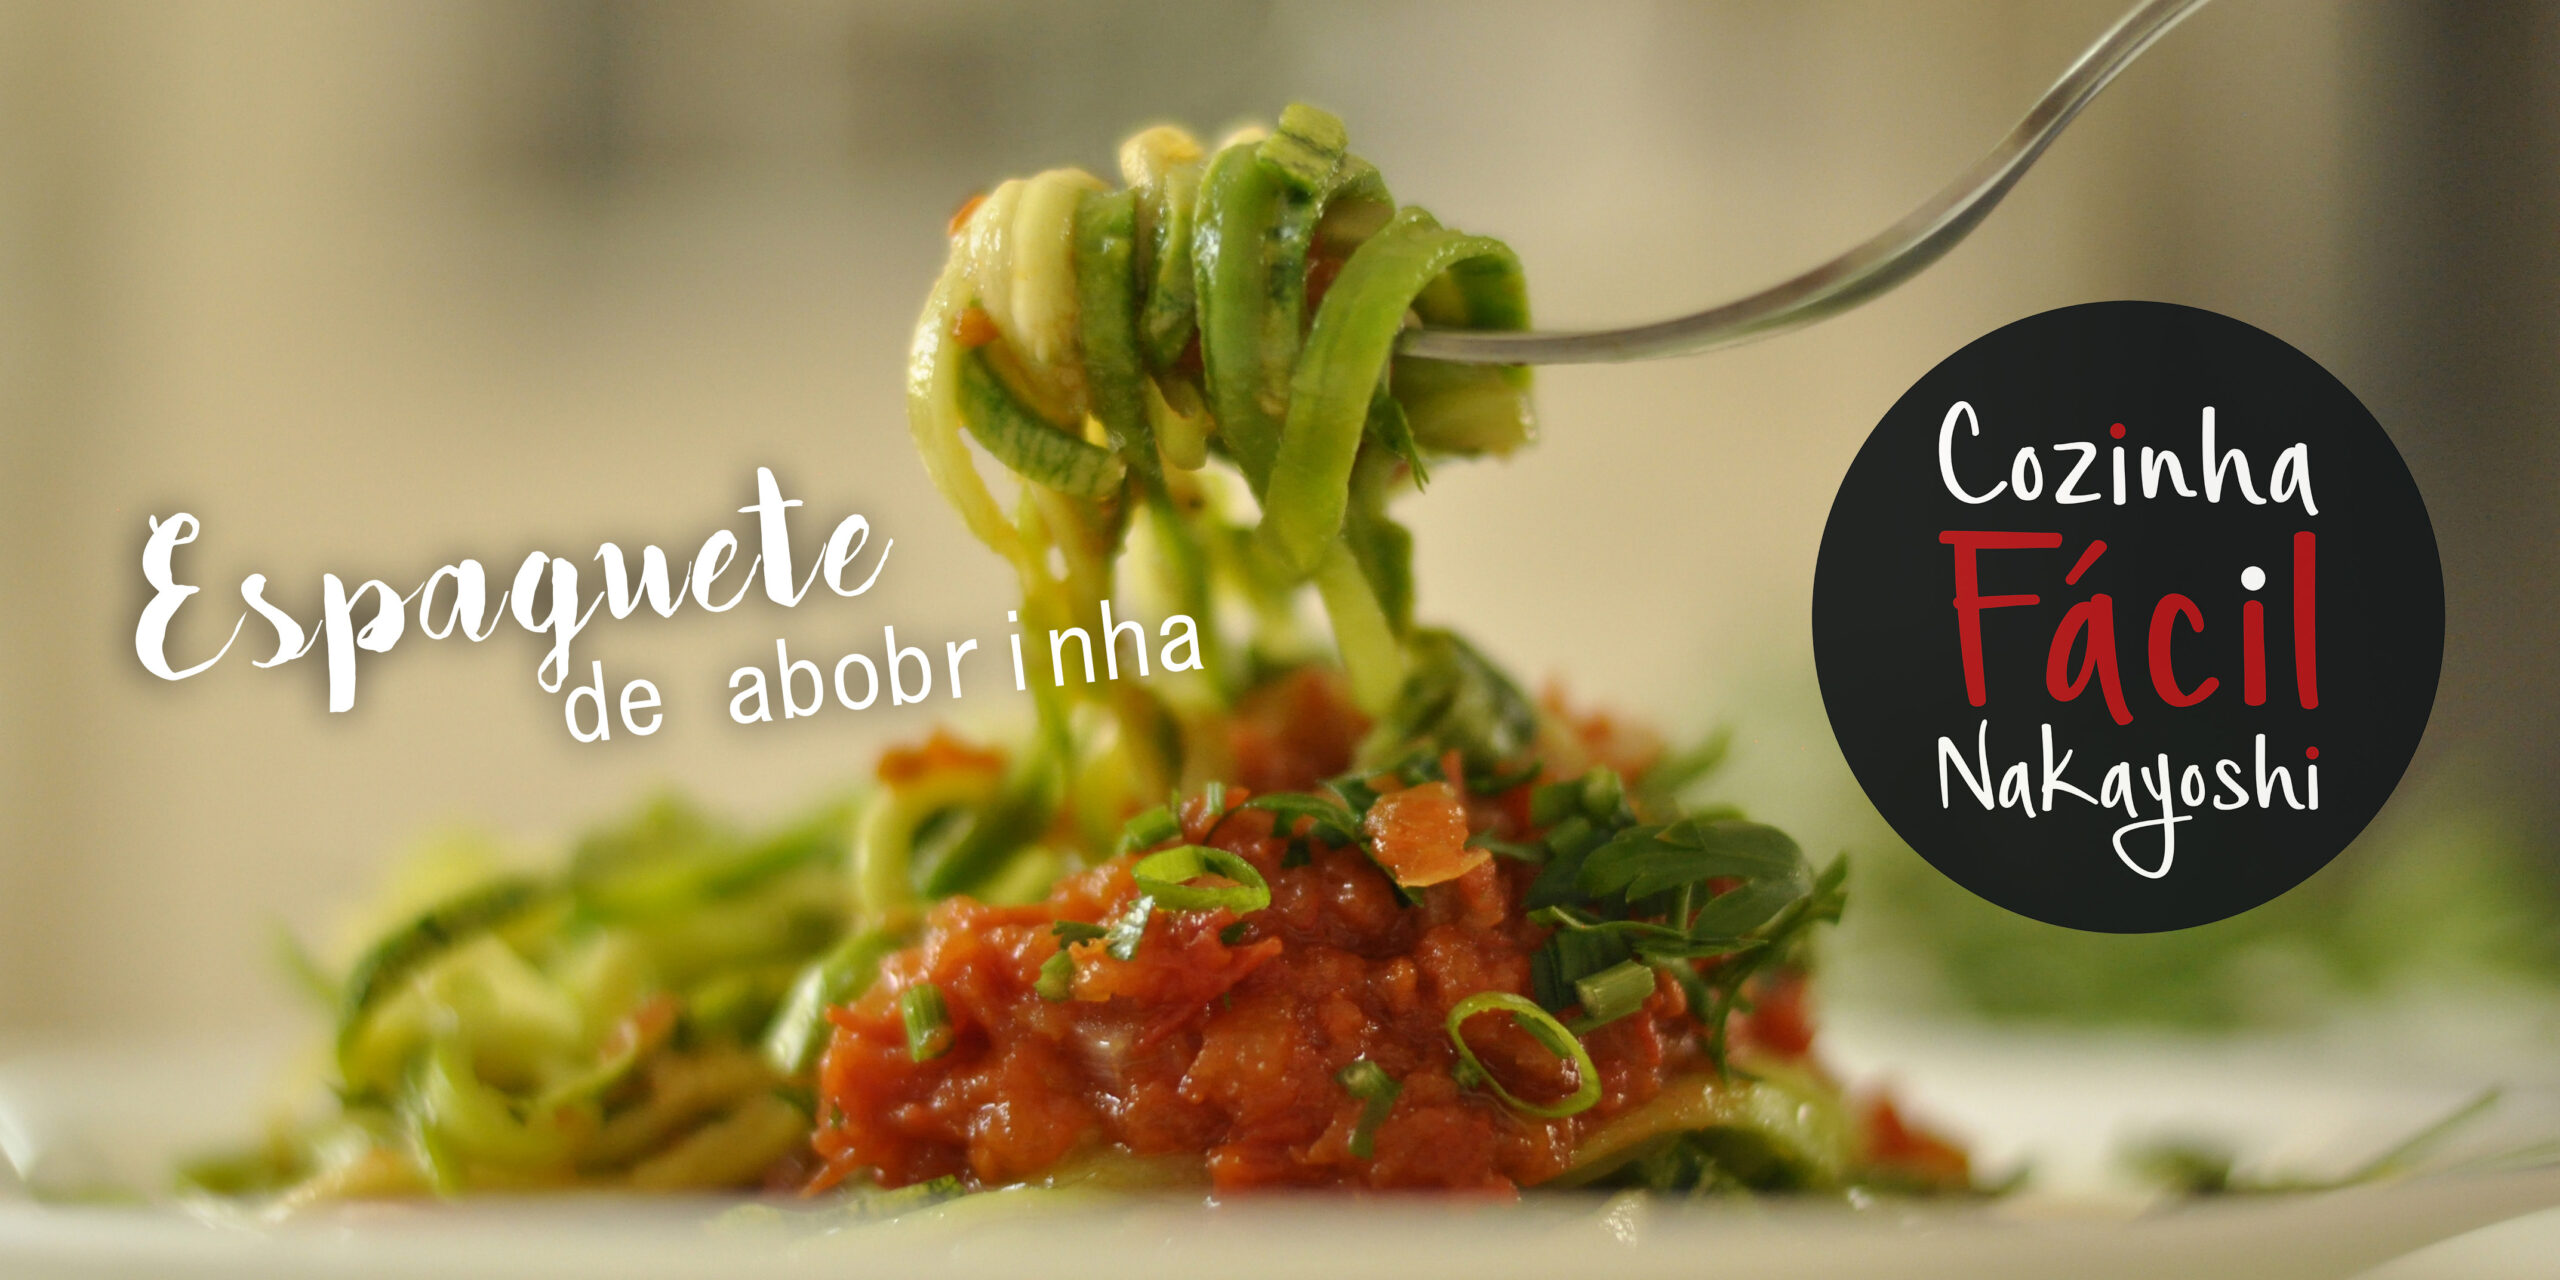 Espaguete de Abobrinha | Cozinha Fácil Nakayoshi #20